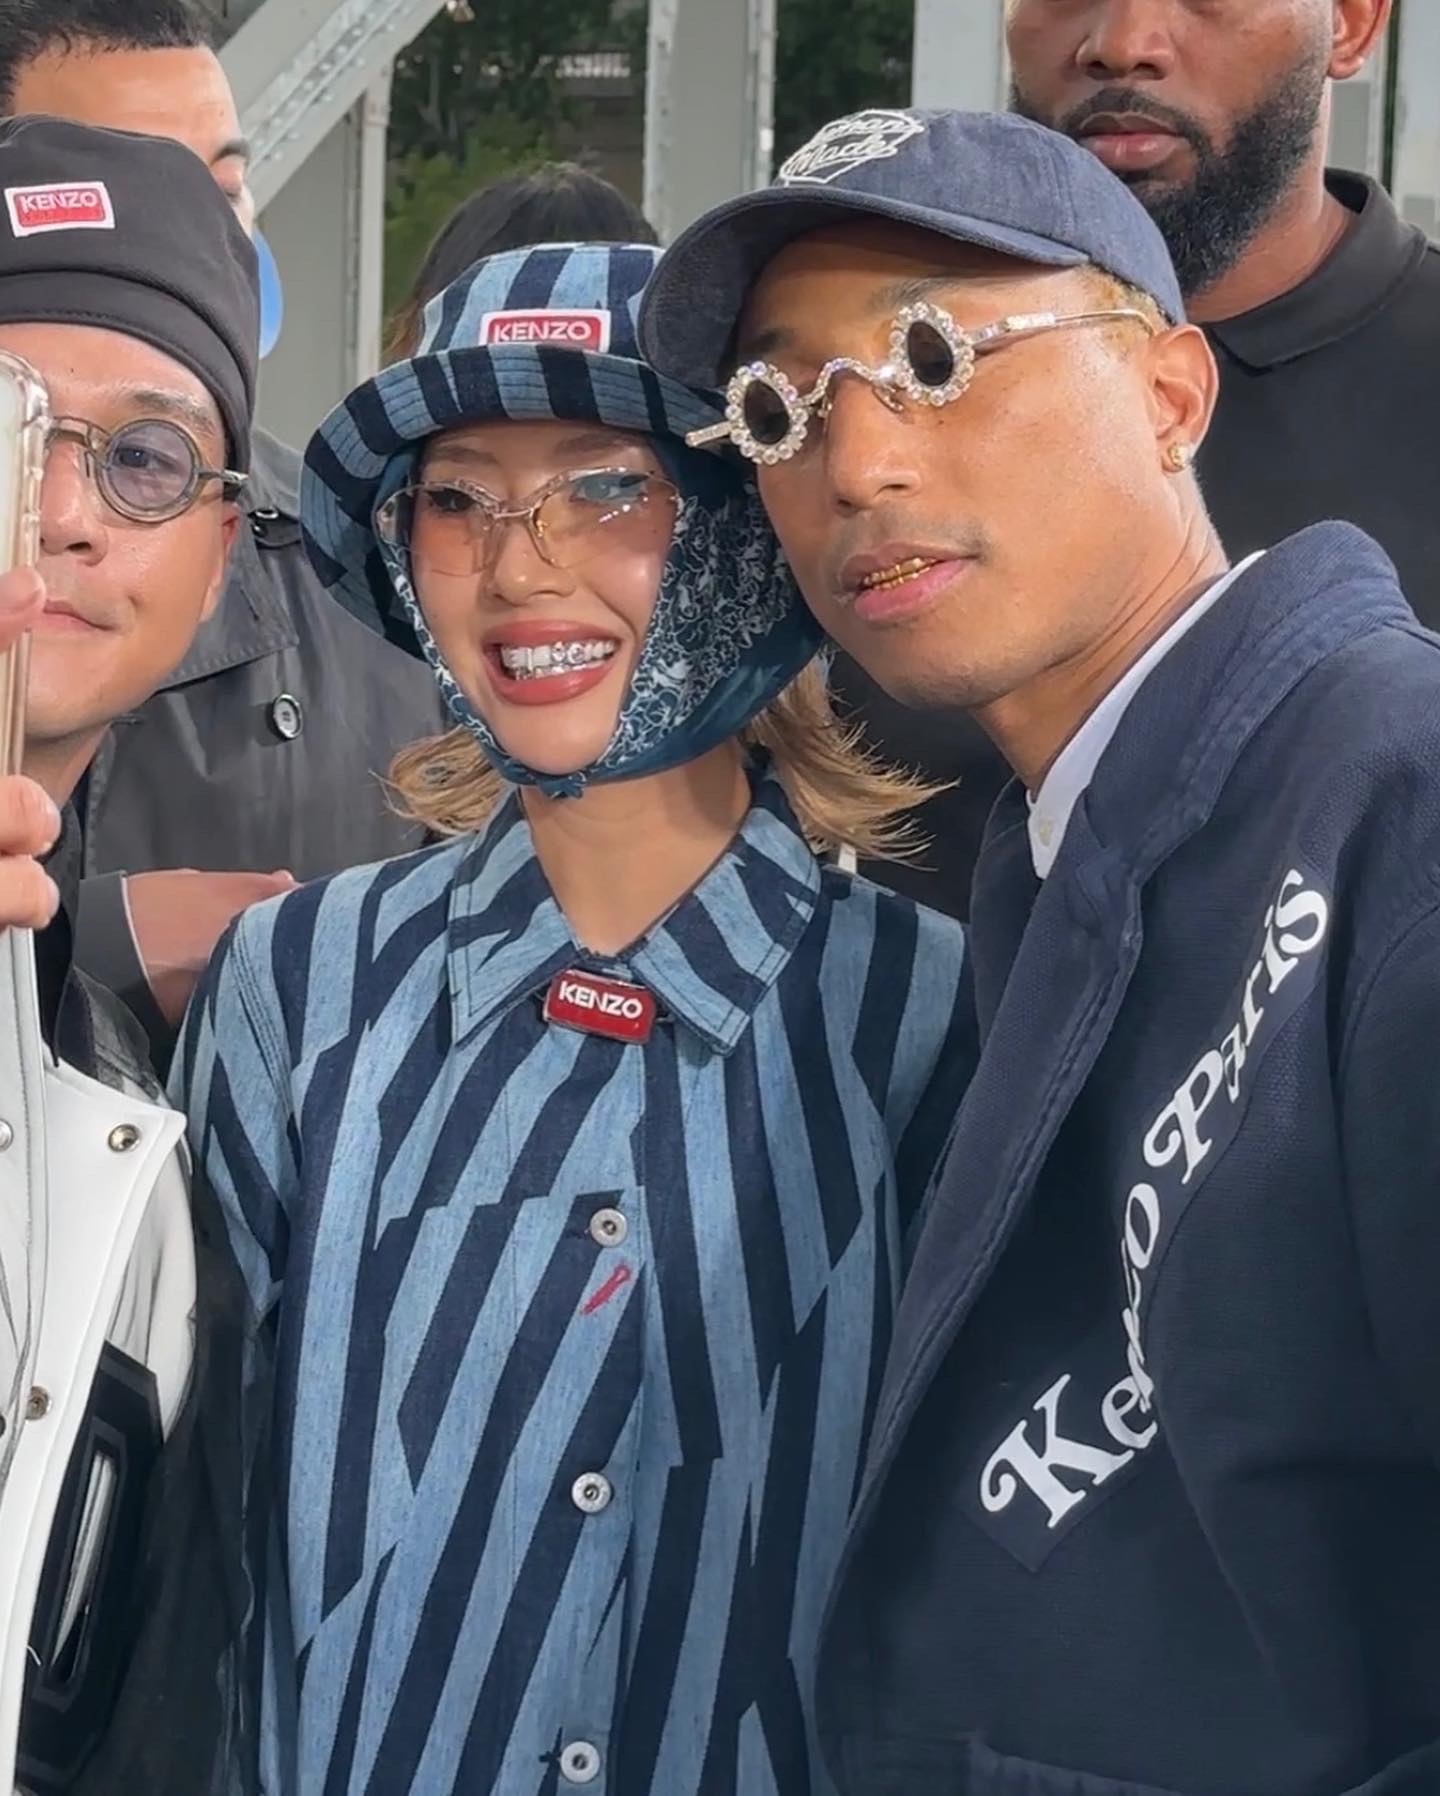 Tại đây, Quỳnh Anh Shyn còn có cơ hội gặp gỡ và đứng chung khung hình cùng Giám đốc sáng tạo Louis Vuitton - Pharrell Williams và rapper Tyga